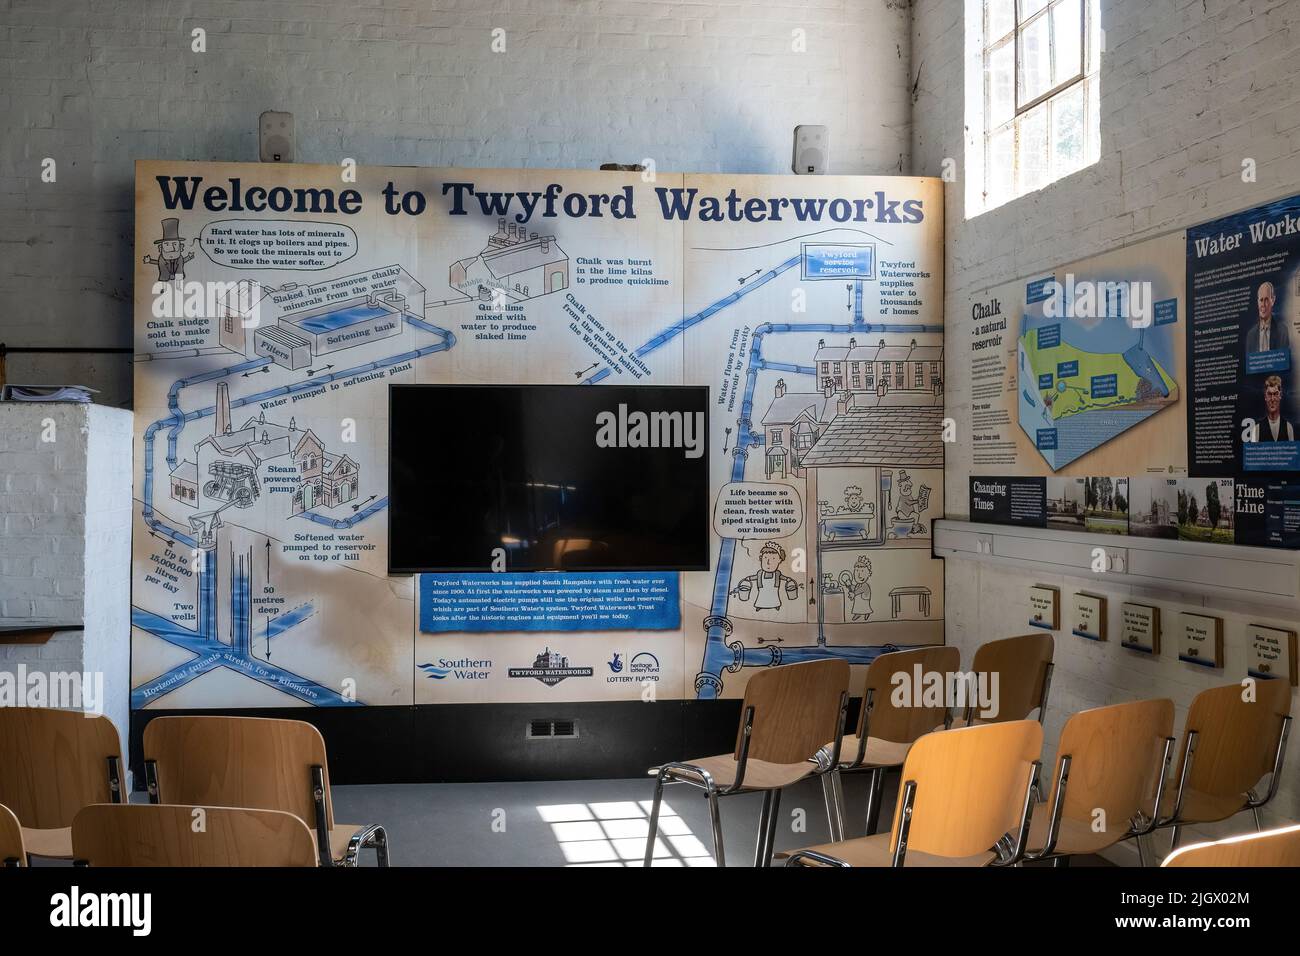 Twyford Waterworks, une station de pompage et de purification de l'eau Edwardian préservée dans le Hampshire, en Angleterre, au Royaume-Uni. Attraction touristique, intérieur du musée. Banque D'Images